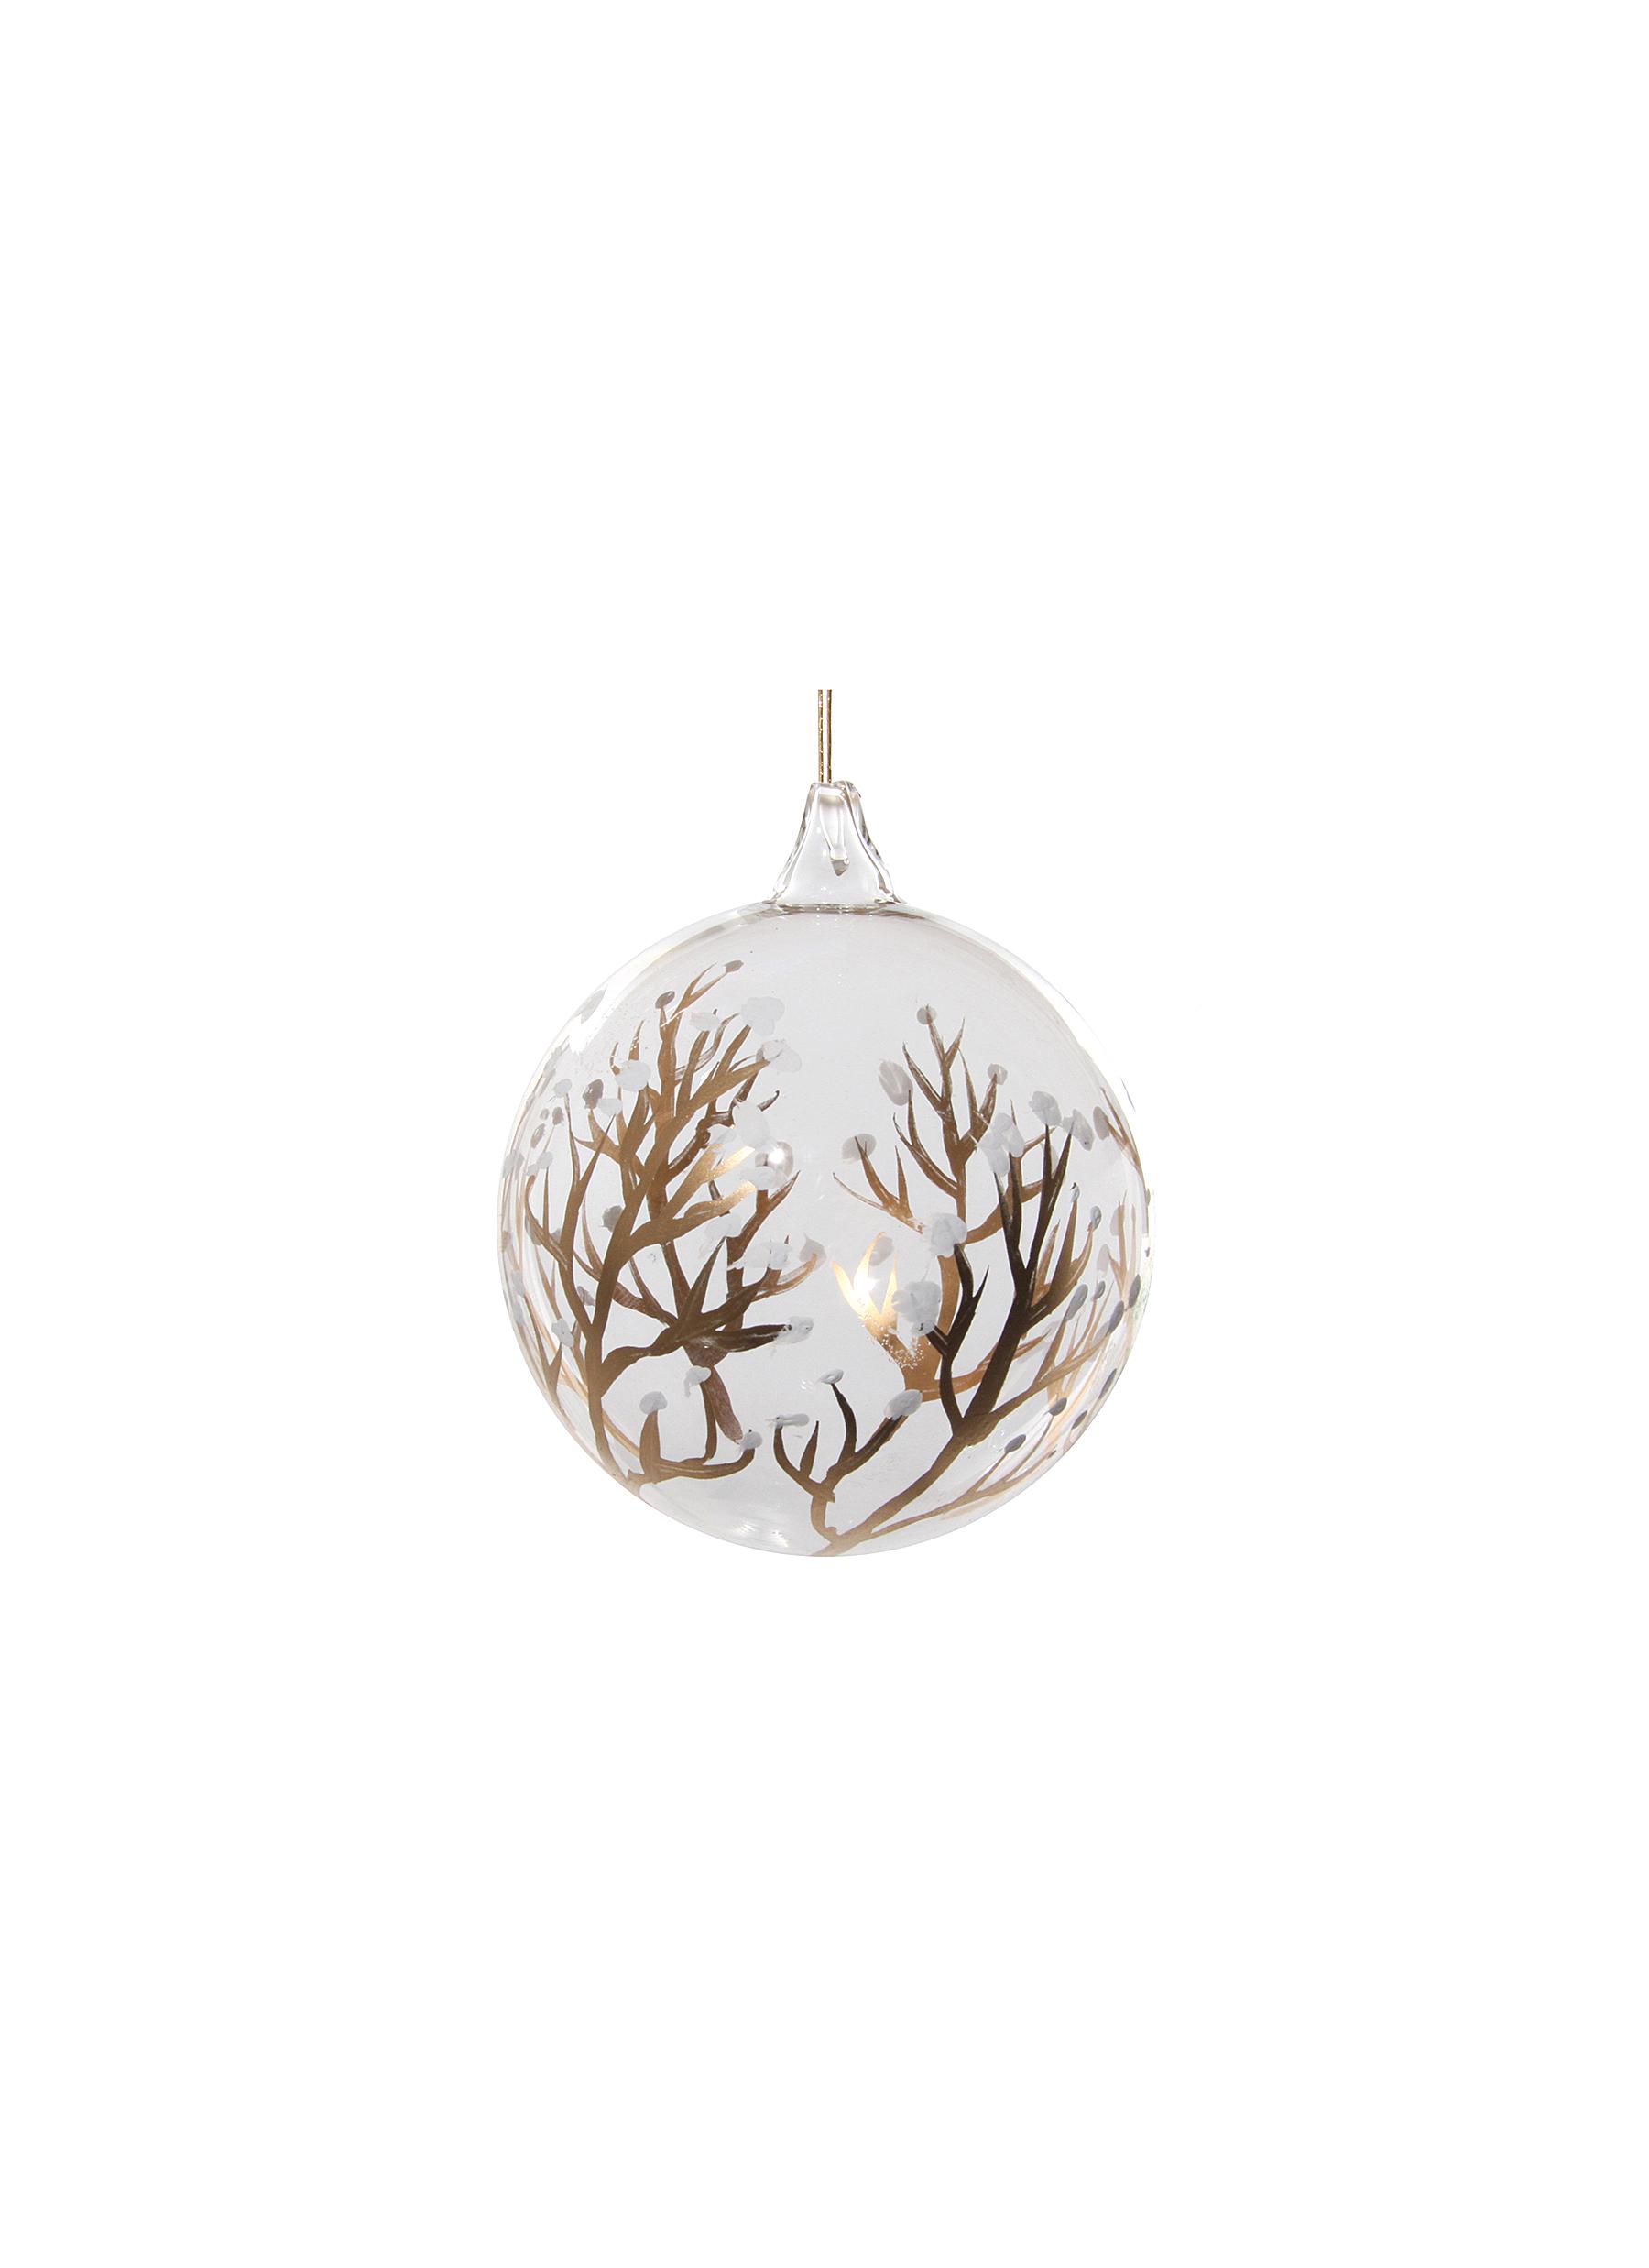 Leaf Print Glass Ball Ornament - Gold/White